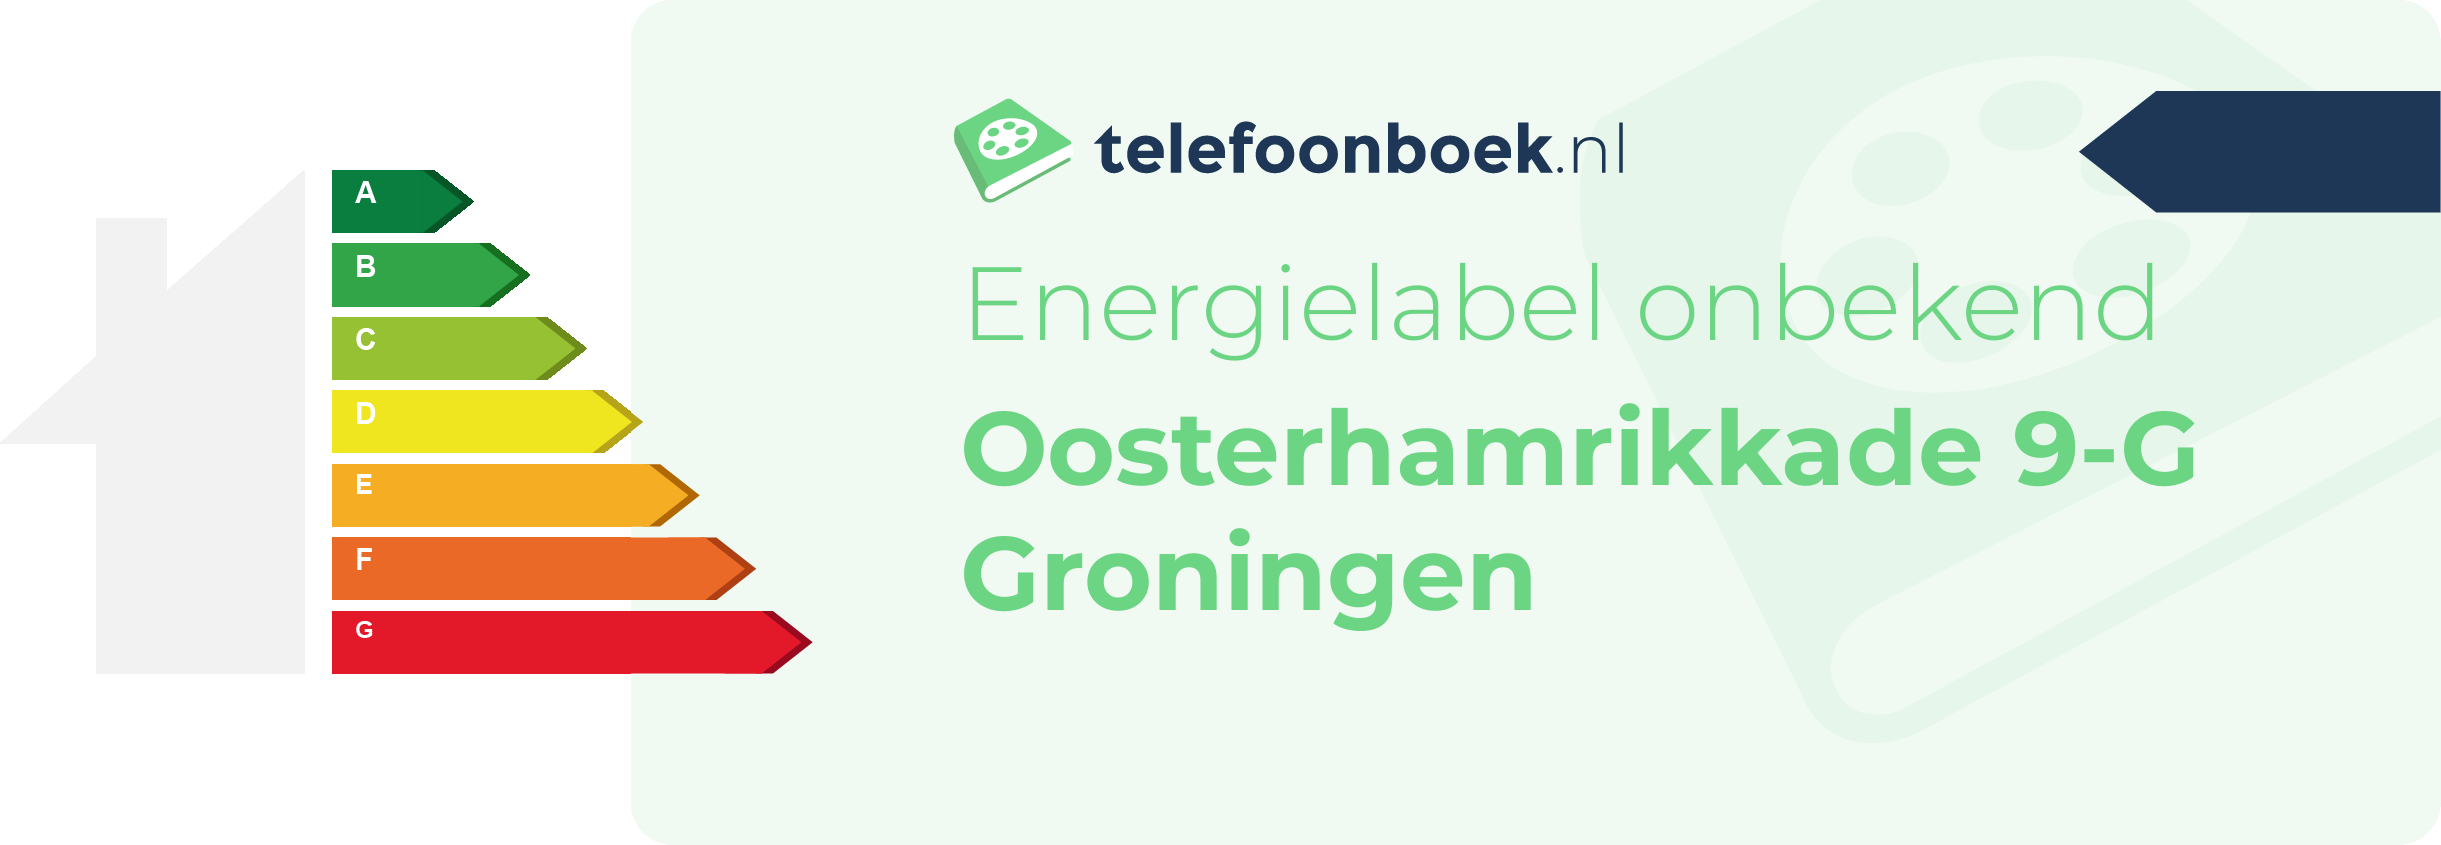 Energielabel Oosterhamrikkade 9-G Groningen